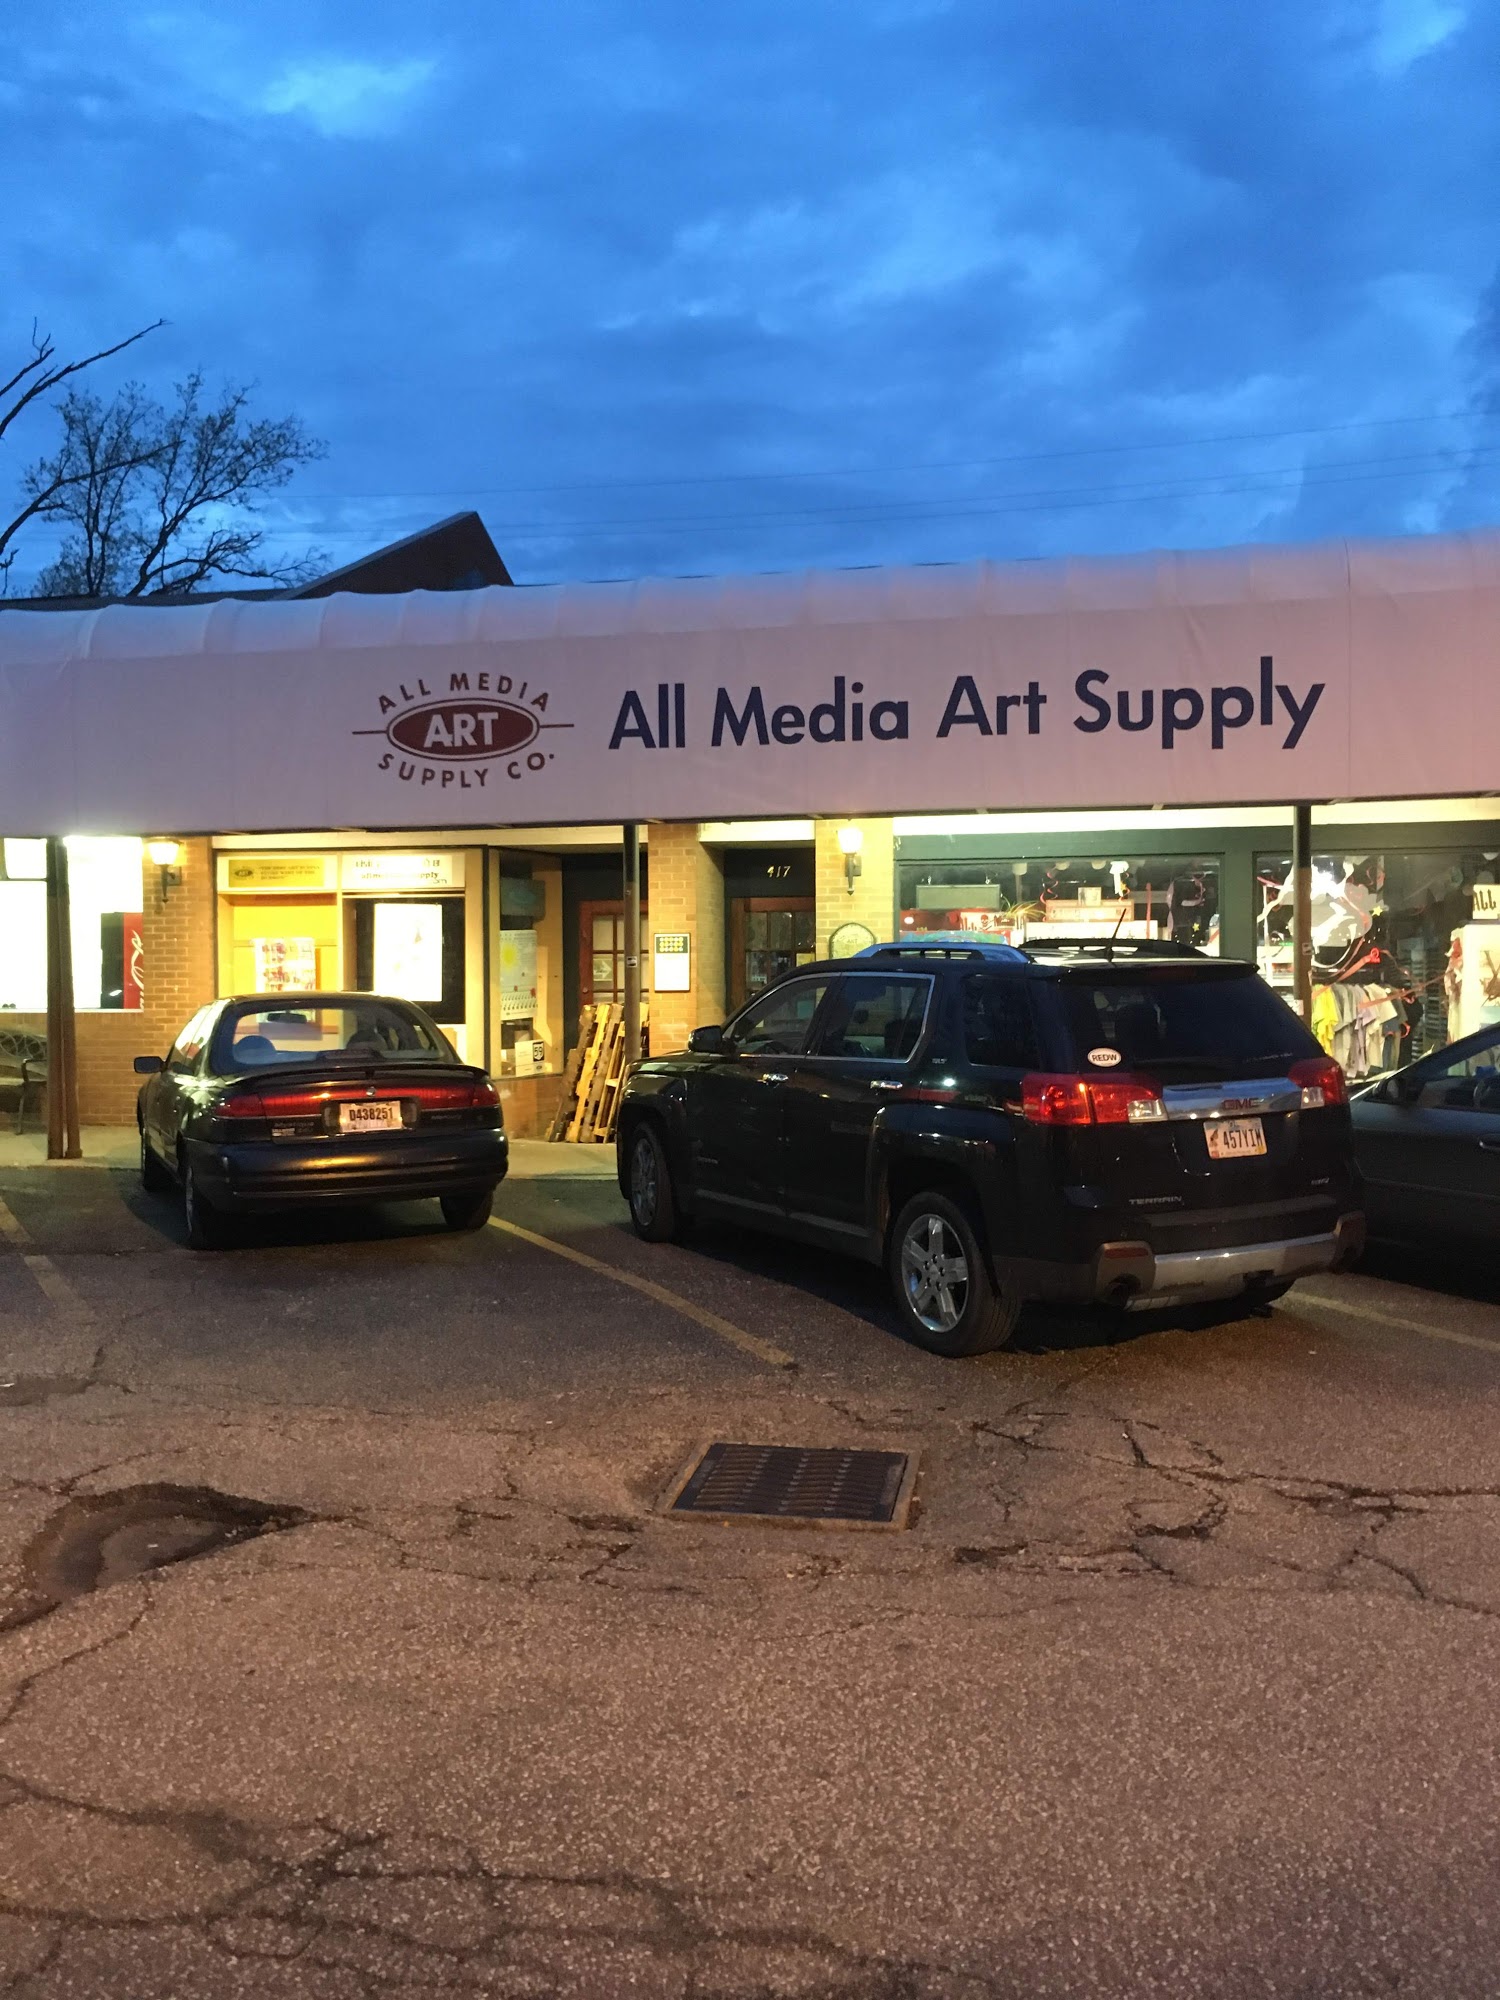 All Media Art Supply Co